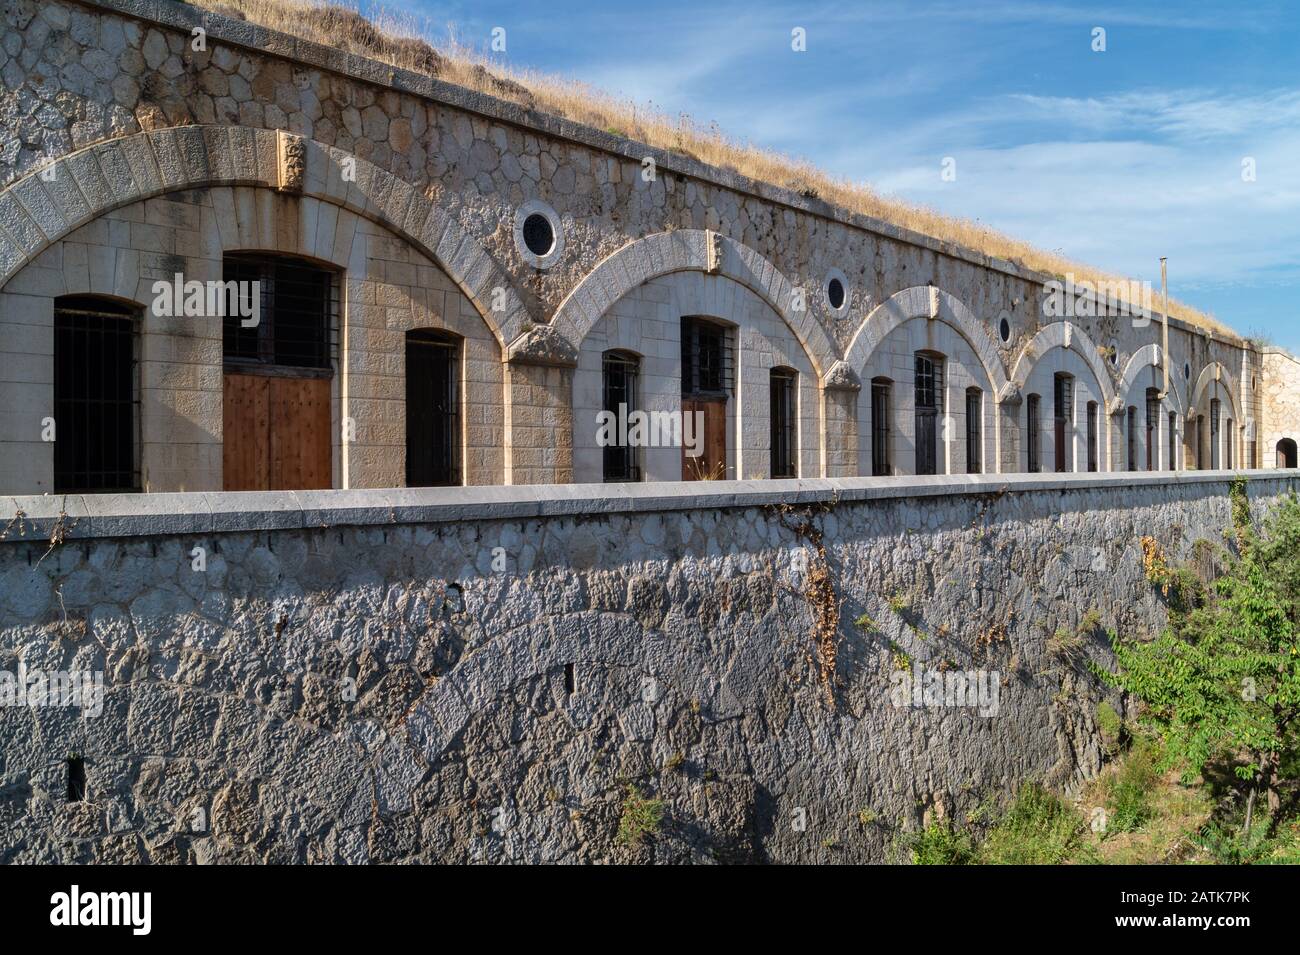 Fort de la Revere nel villaggio di Eze, vicino a Nizza, Costa Azzurra, Francia meridionale, storico edificio militare del 19th secolo sulla Grand Corniche Foto Stock